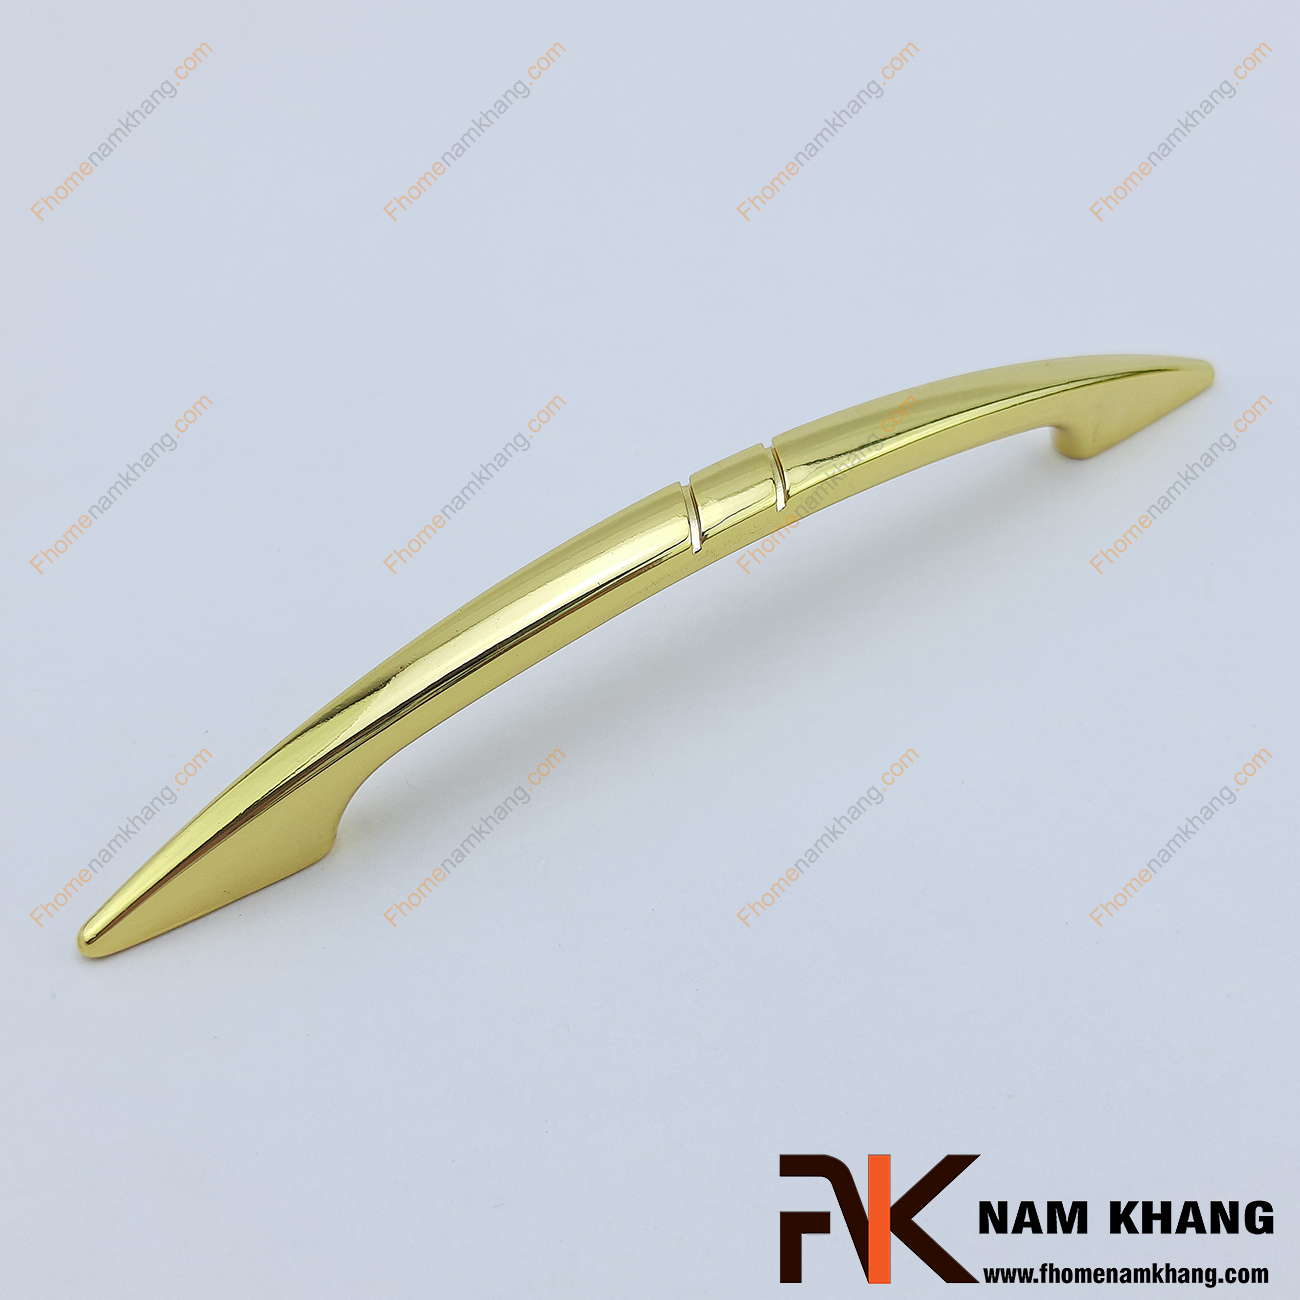 Tay nắm tủ đầu nhọn mạ vàng NK058 có thiết kế thon gọn từ hợp kim chất lượng cao, được gia công hoàn thiện thẩm mỹ cho độ sáng bóng ánh kim cao cấp.